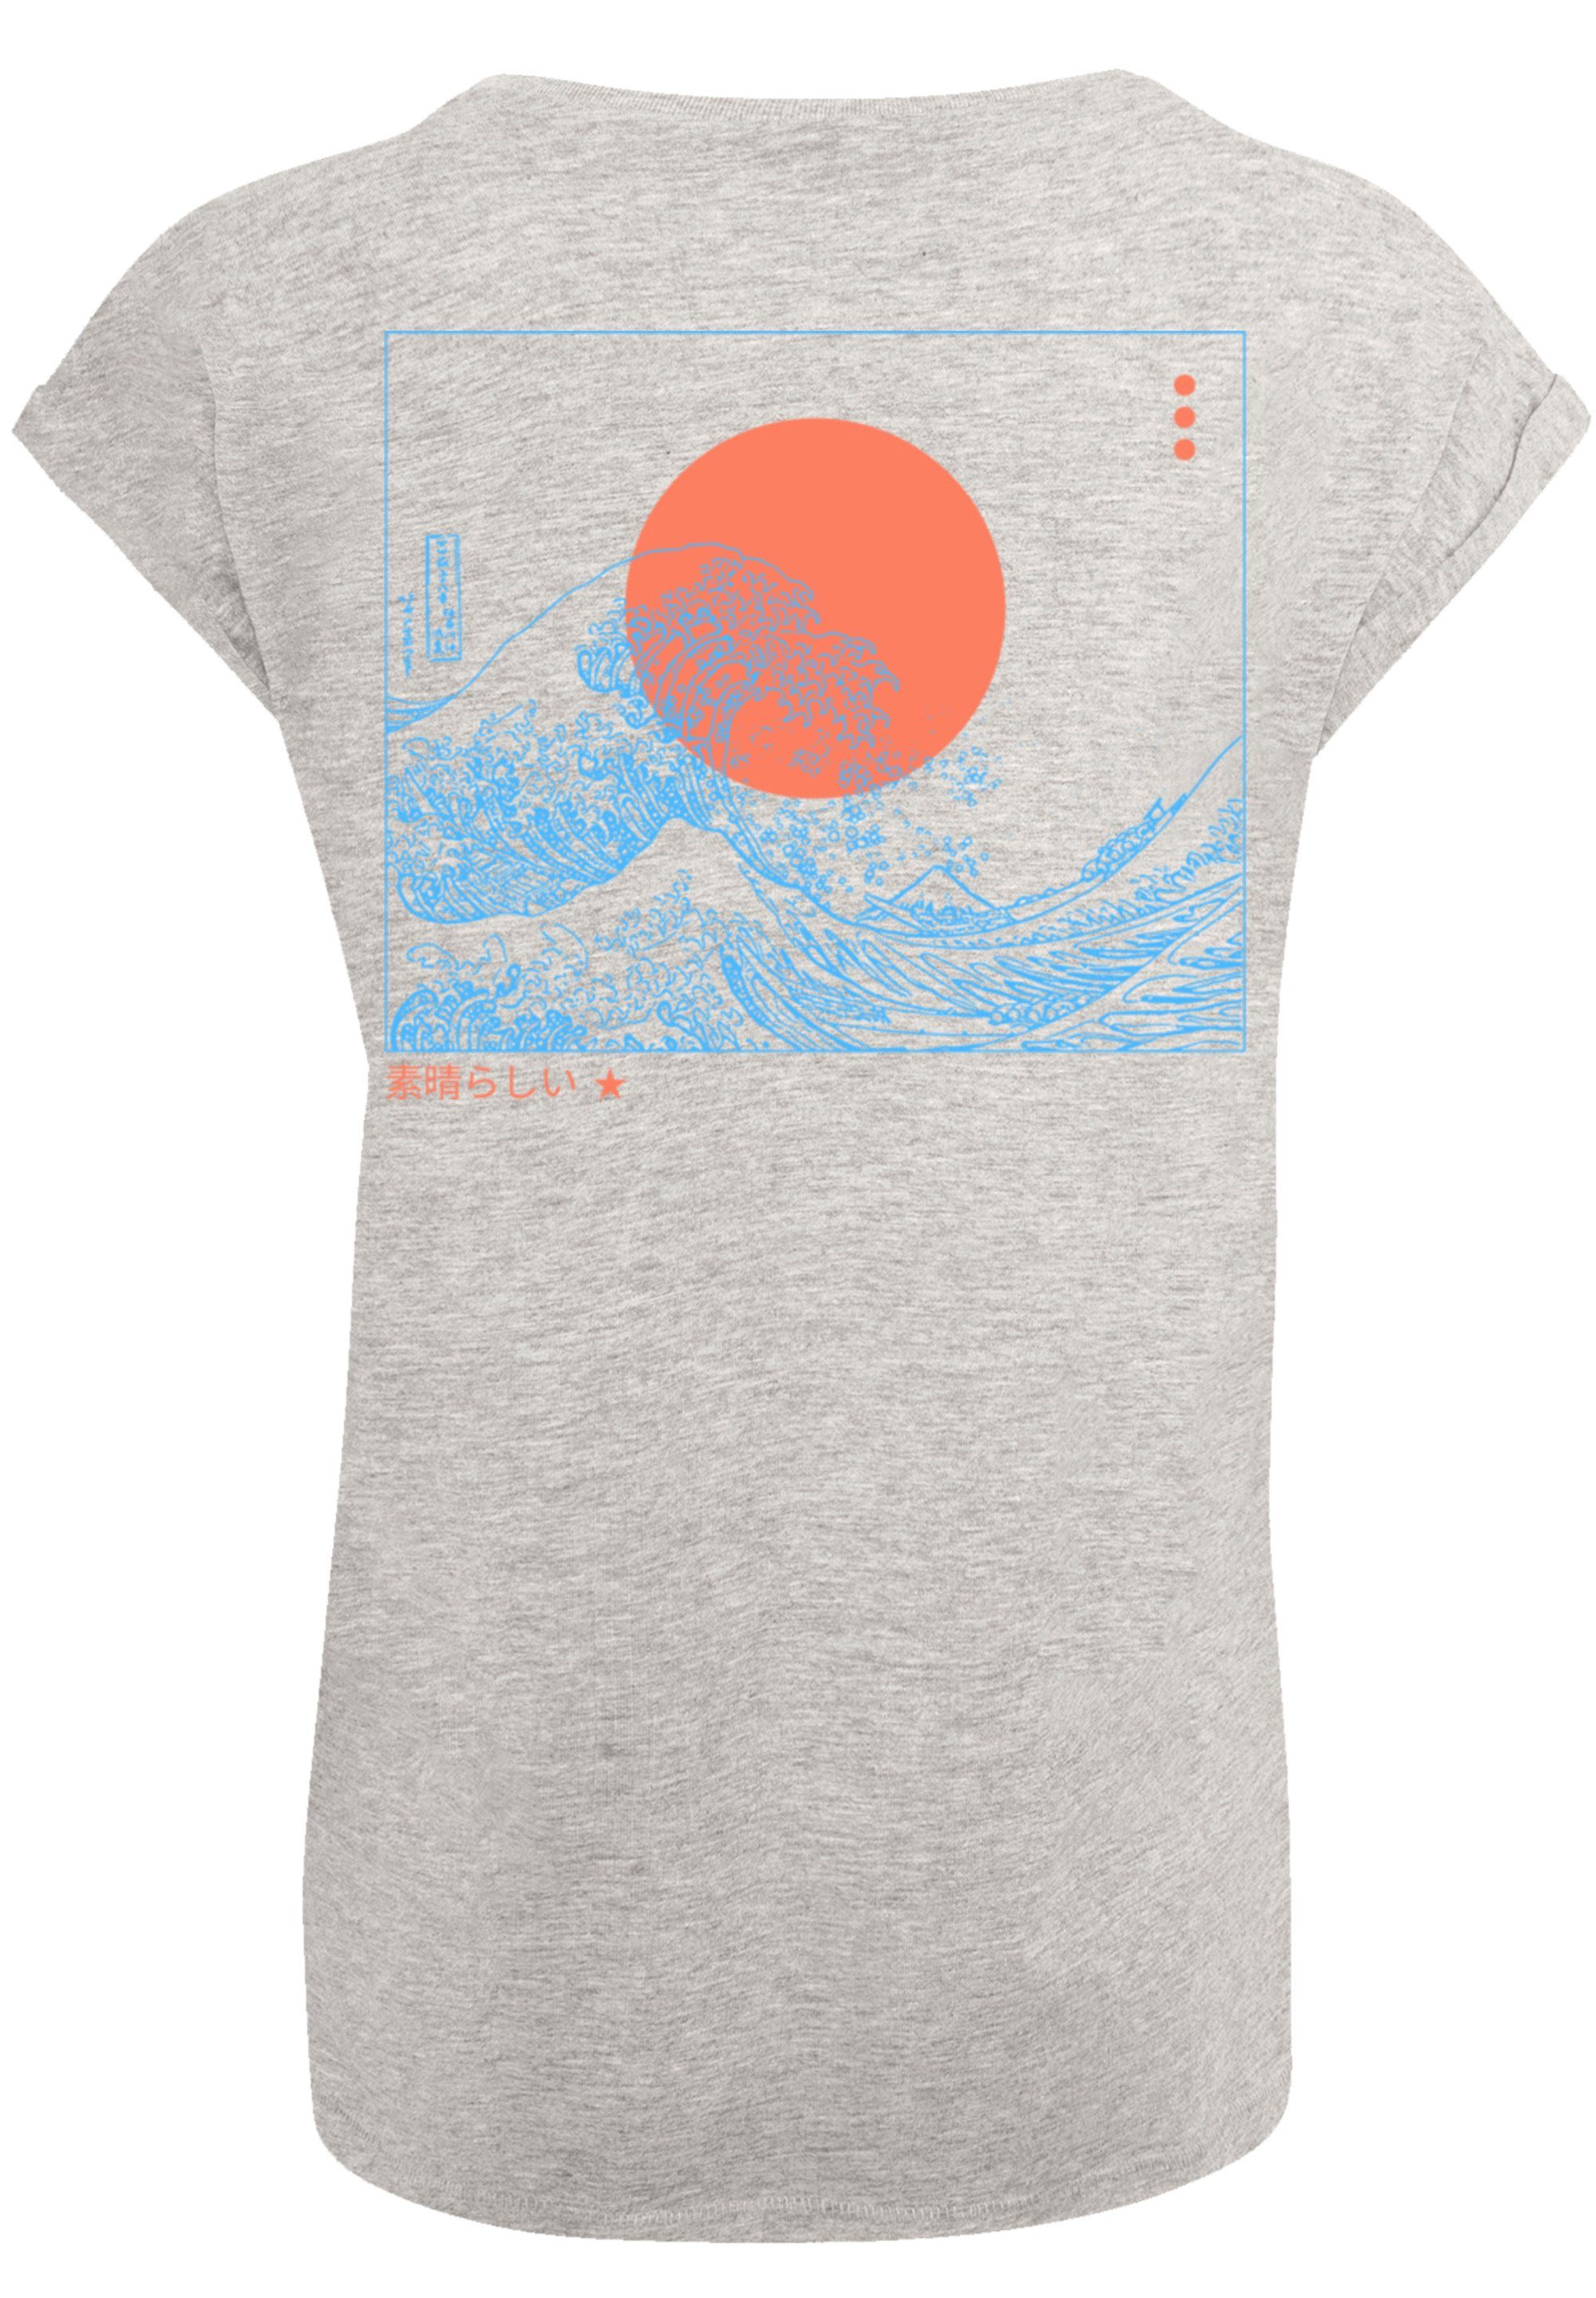 Das trägt Model Kanagawa PLUS T-Shirt Print, und F4NT4STIC 170 cm SIZE Größe M Welle ist